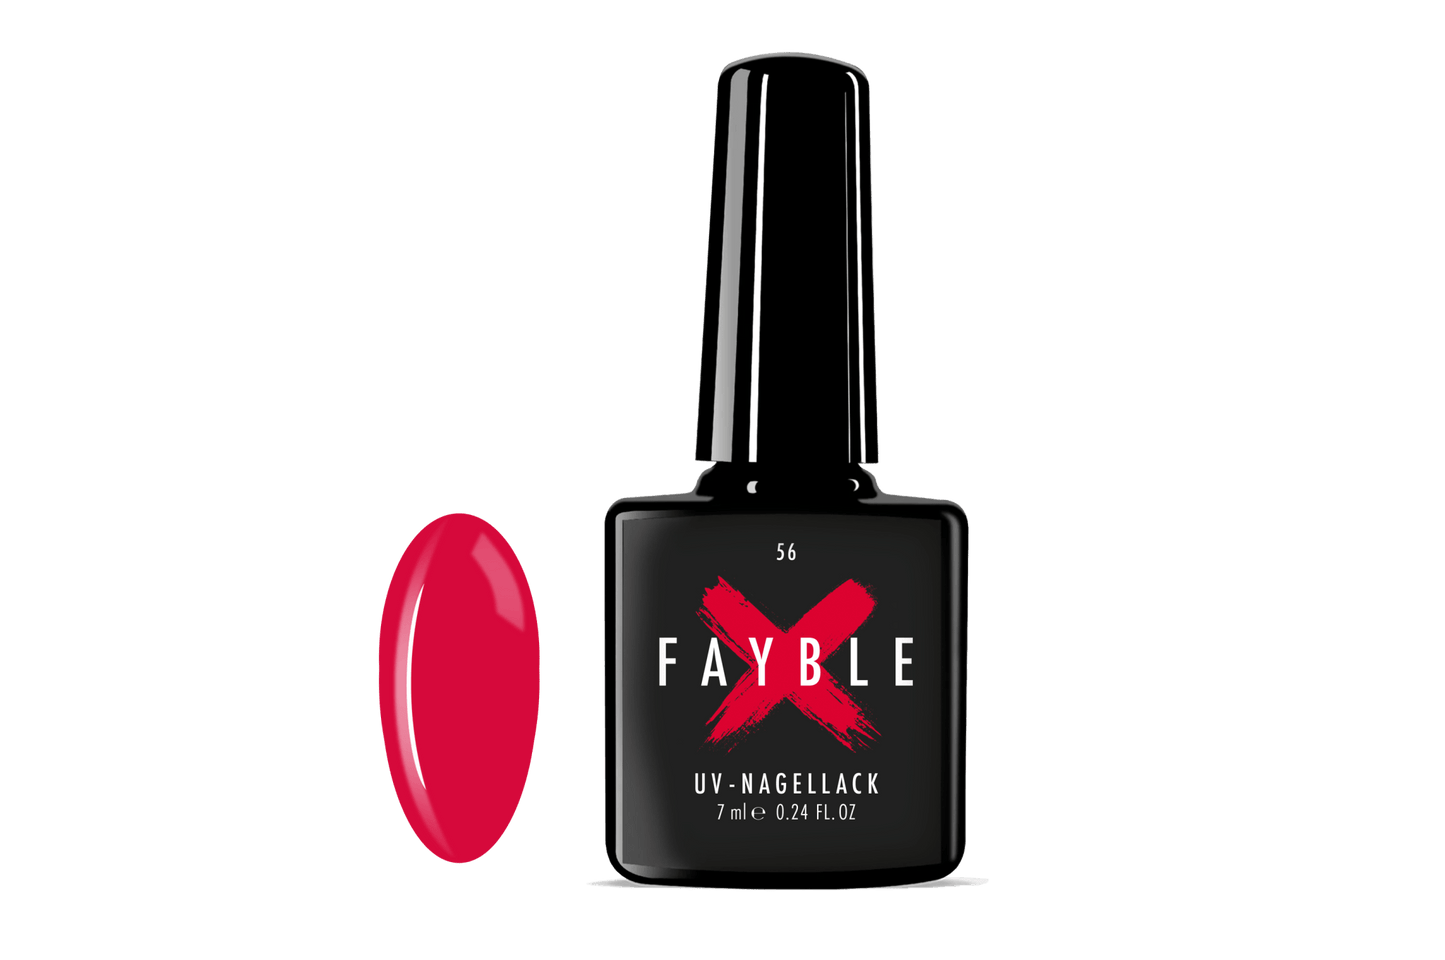 FAYBLE | UV-Nagellack Nr. 56 - FAYBLE